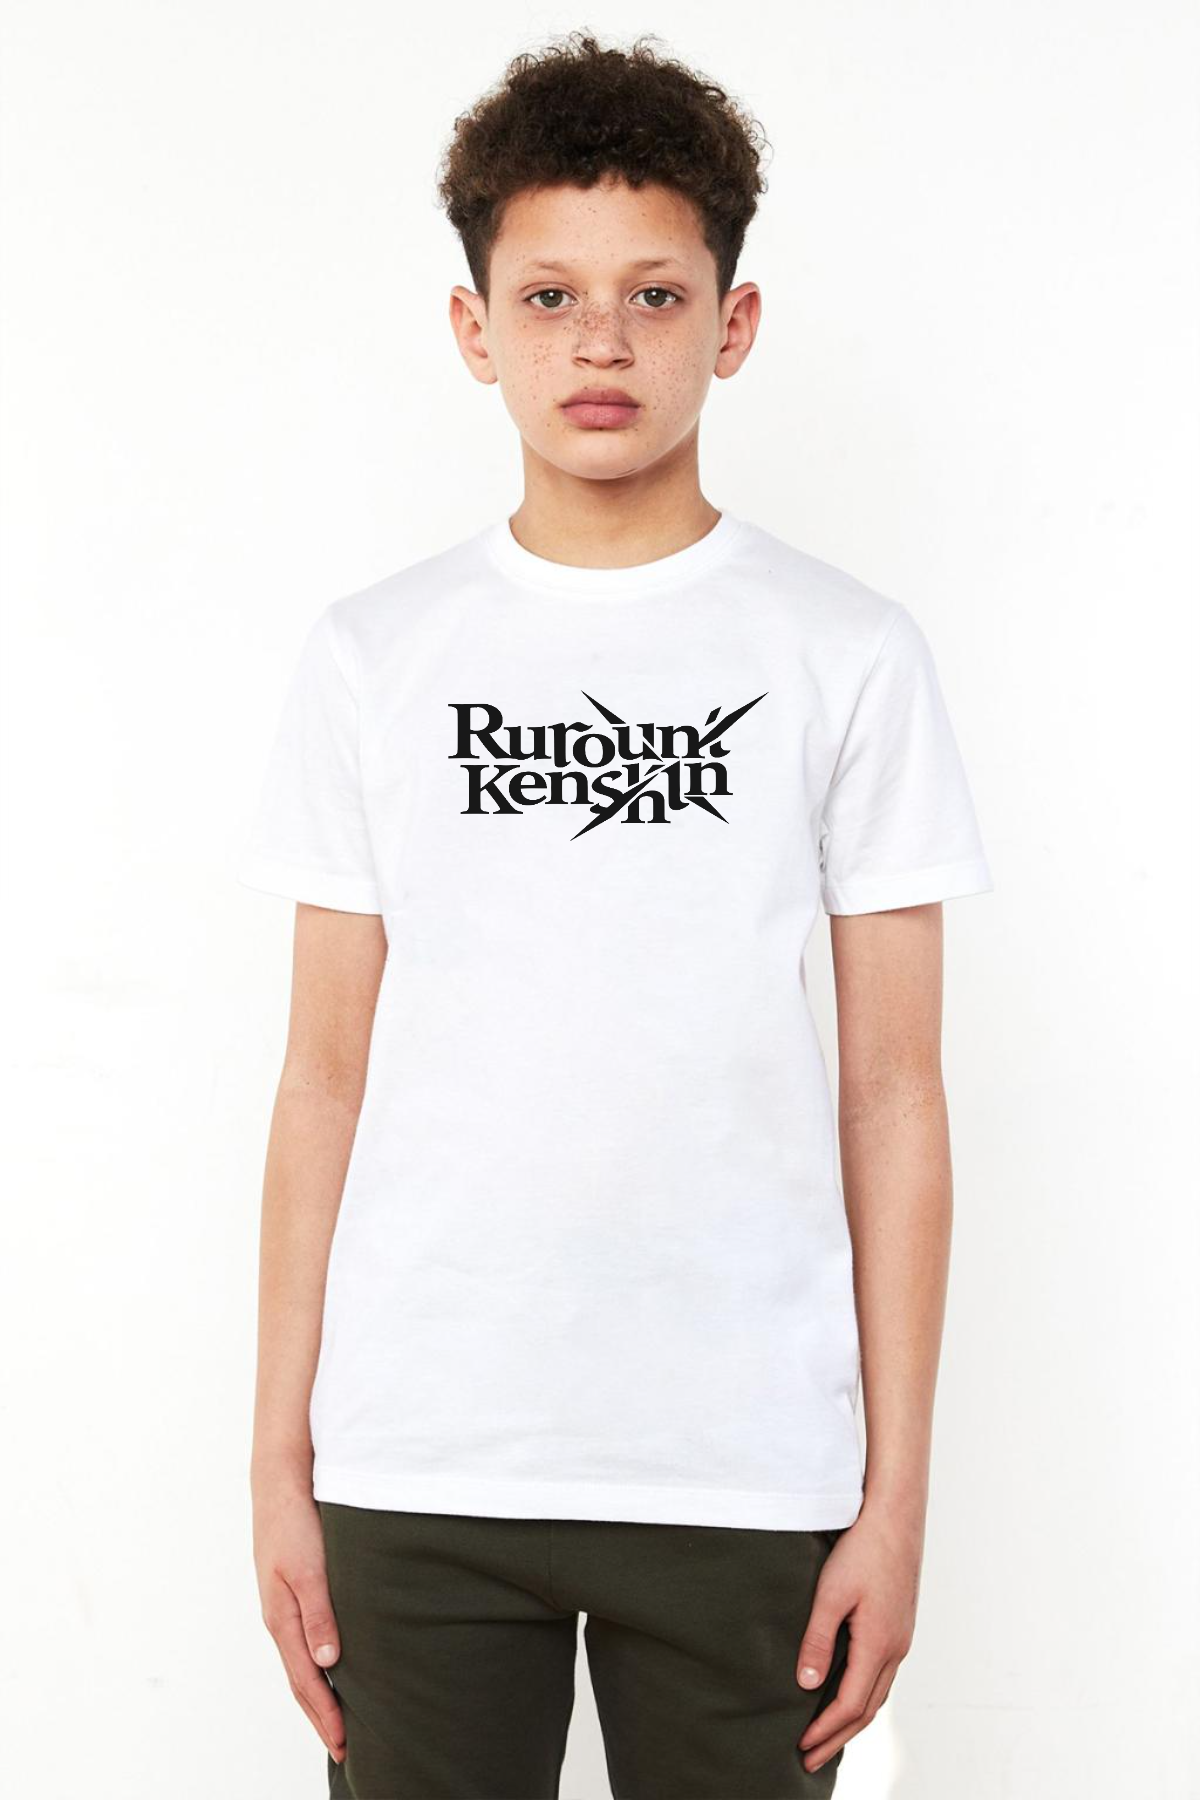 Rurouni Kenshin Letter Logo Beyaz Çocuk Bisikletyaka Tshirt